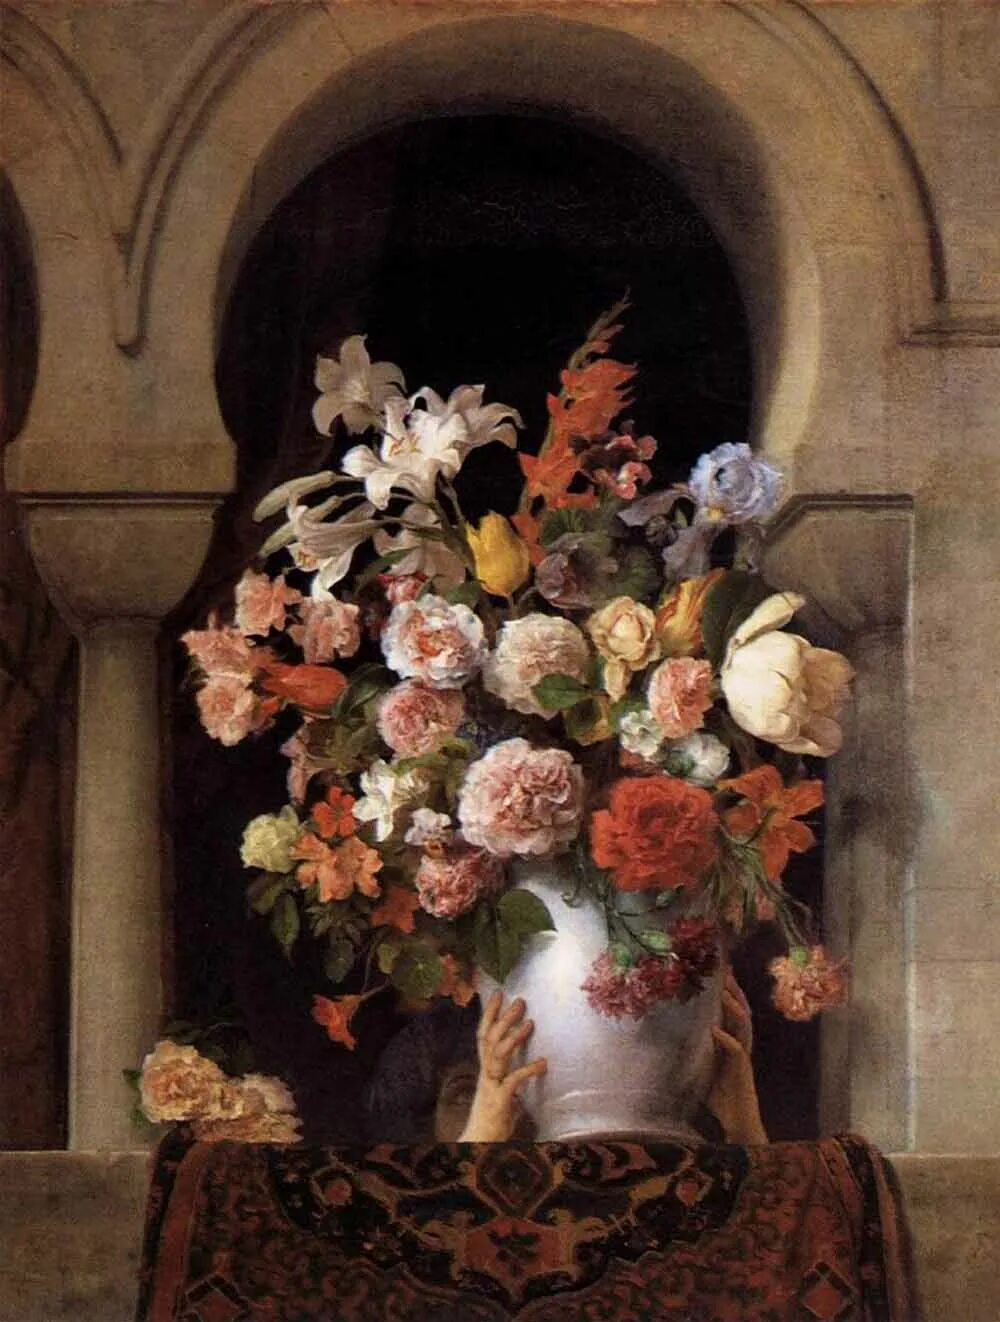 Цветы плоды музыкальные инструменты в итальянской живописи